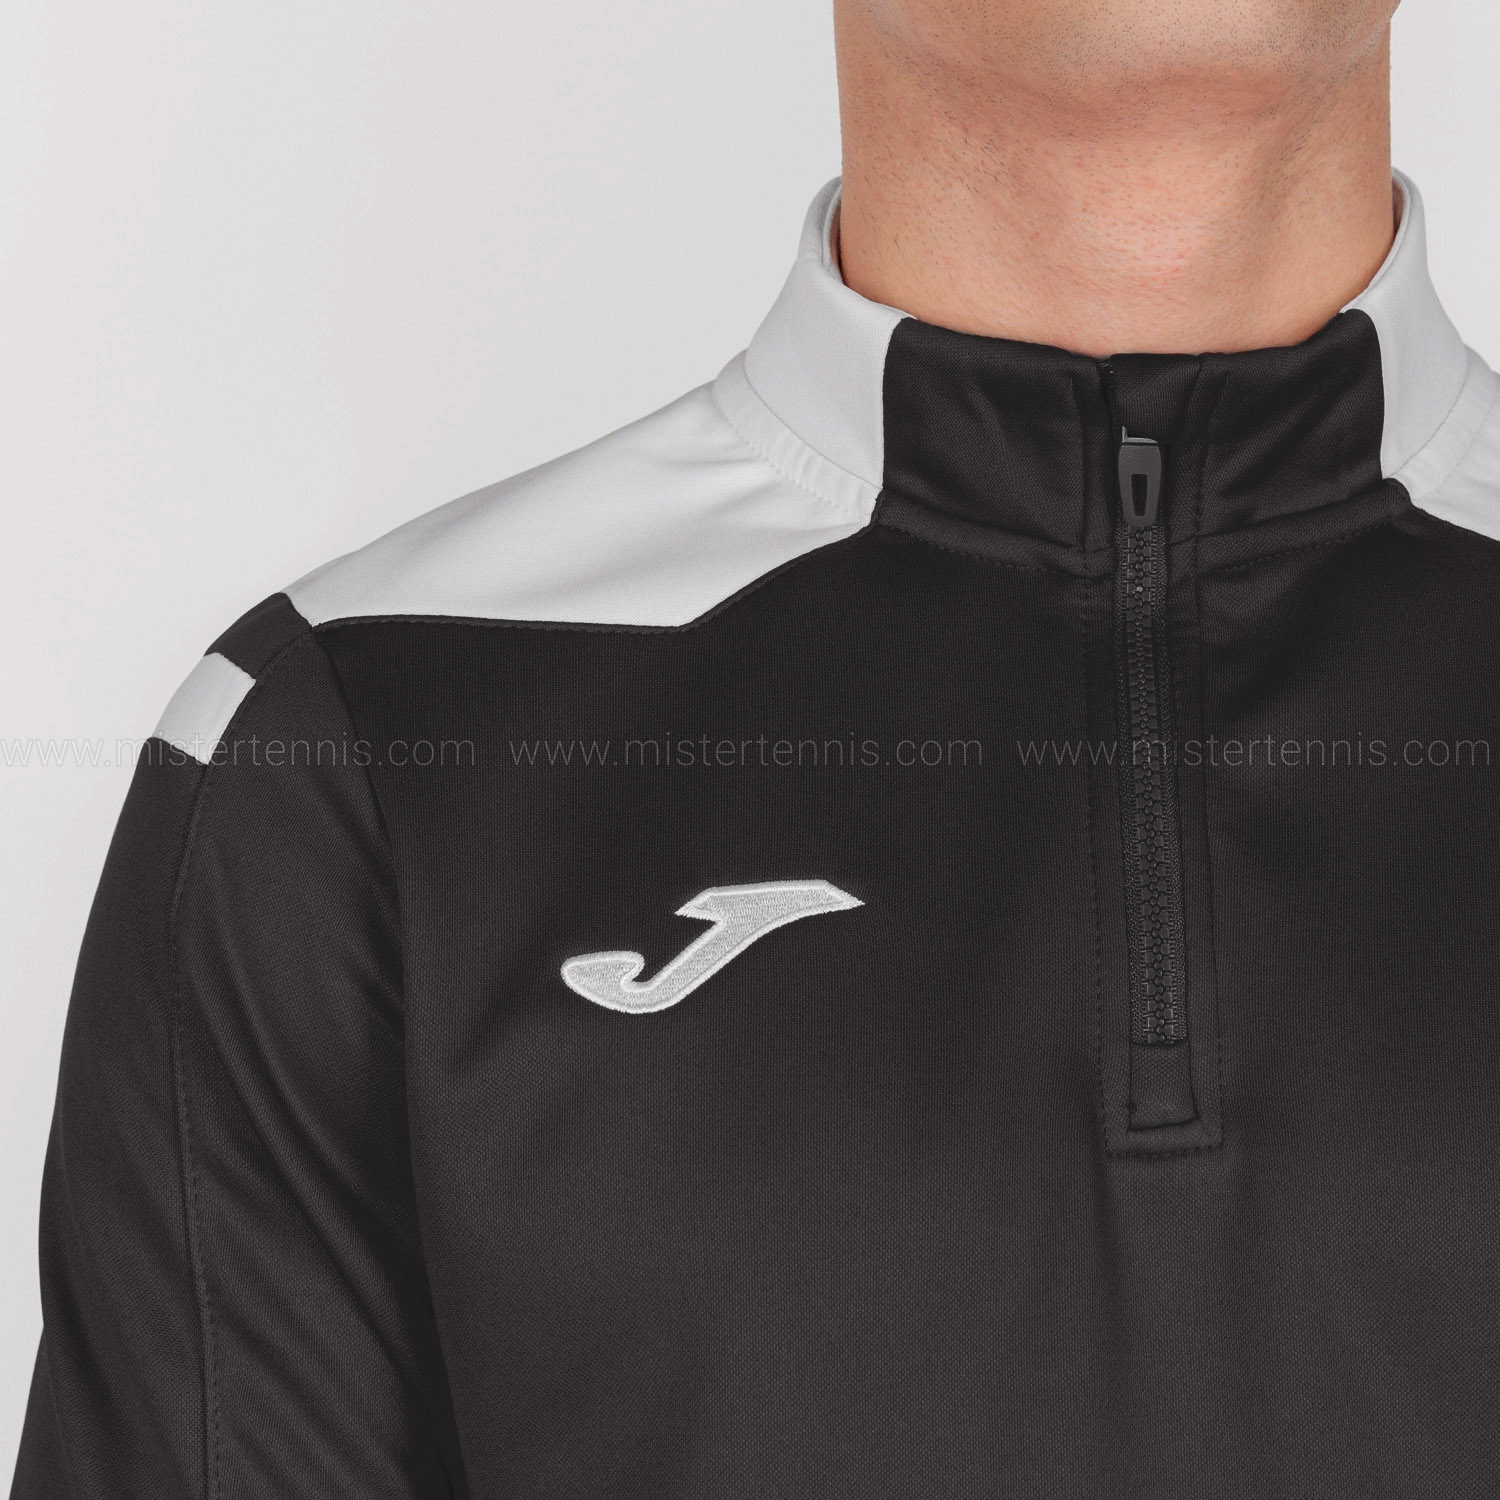 Joma Championship VI Camisa - Black/White